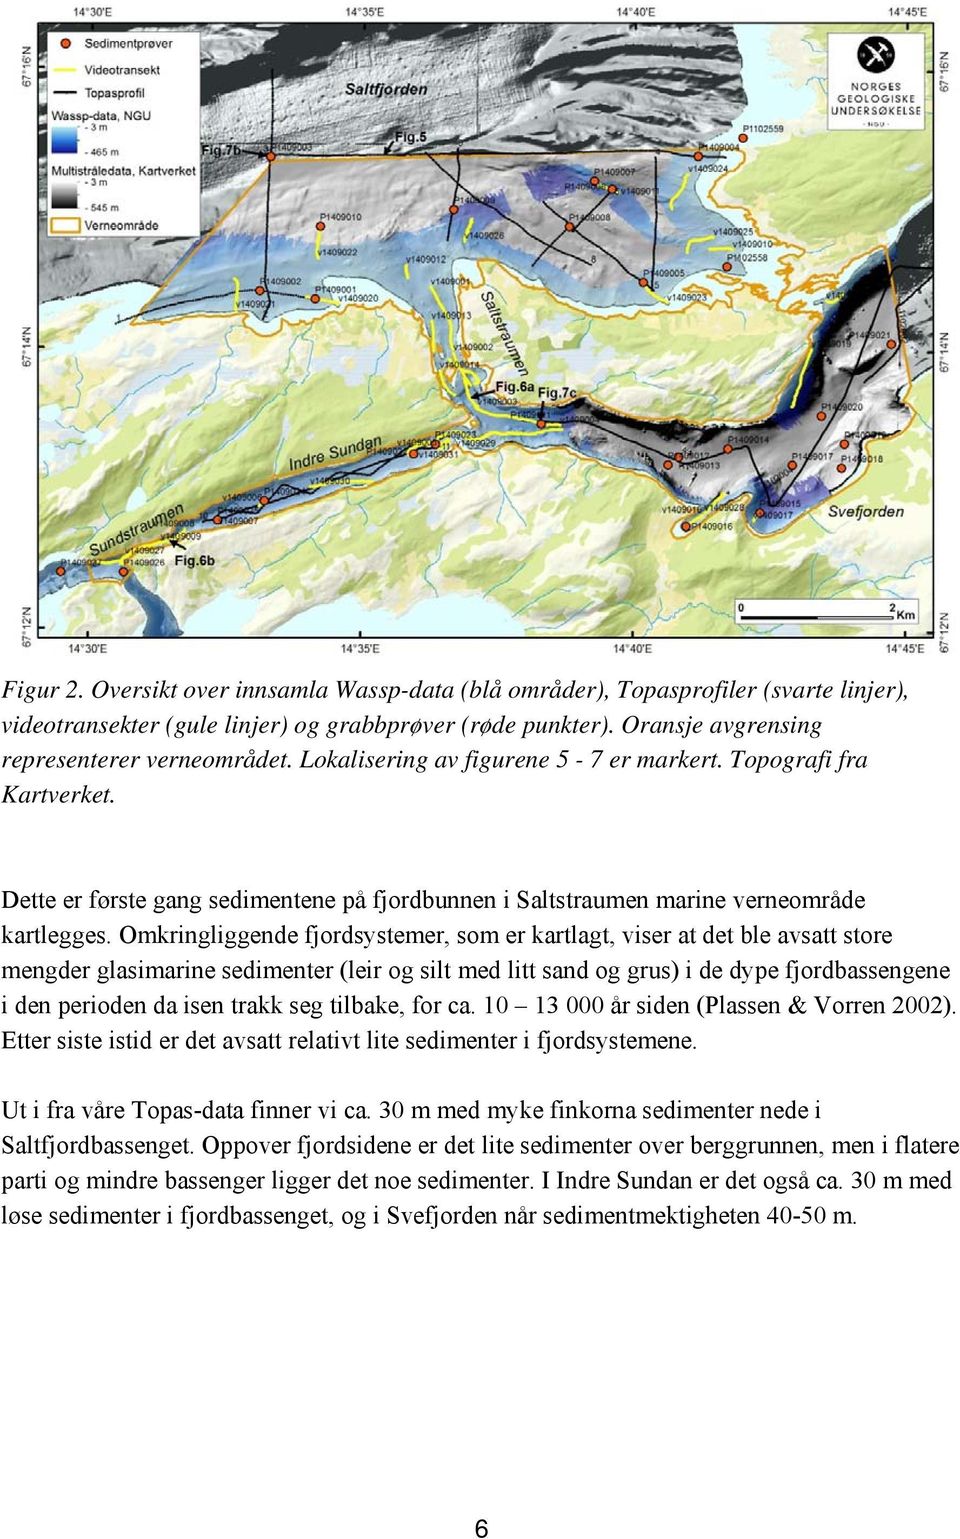 Omkringliggende fjordsystemer, som er kartlagt, viser at det ble avsatt store mengder glasimarine sedimenter (leir og silt med litt sand og grus) i de dype fjordbassengene i den perioden da isen